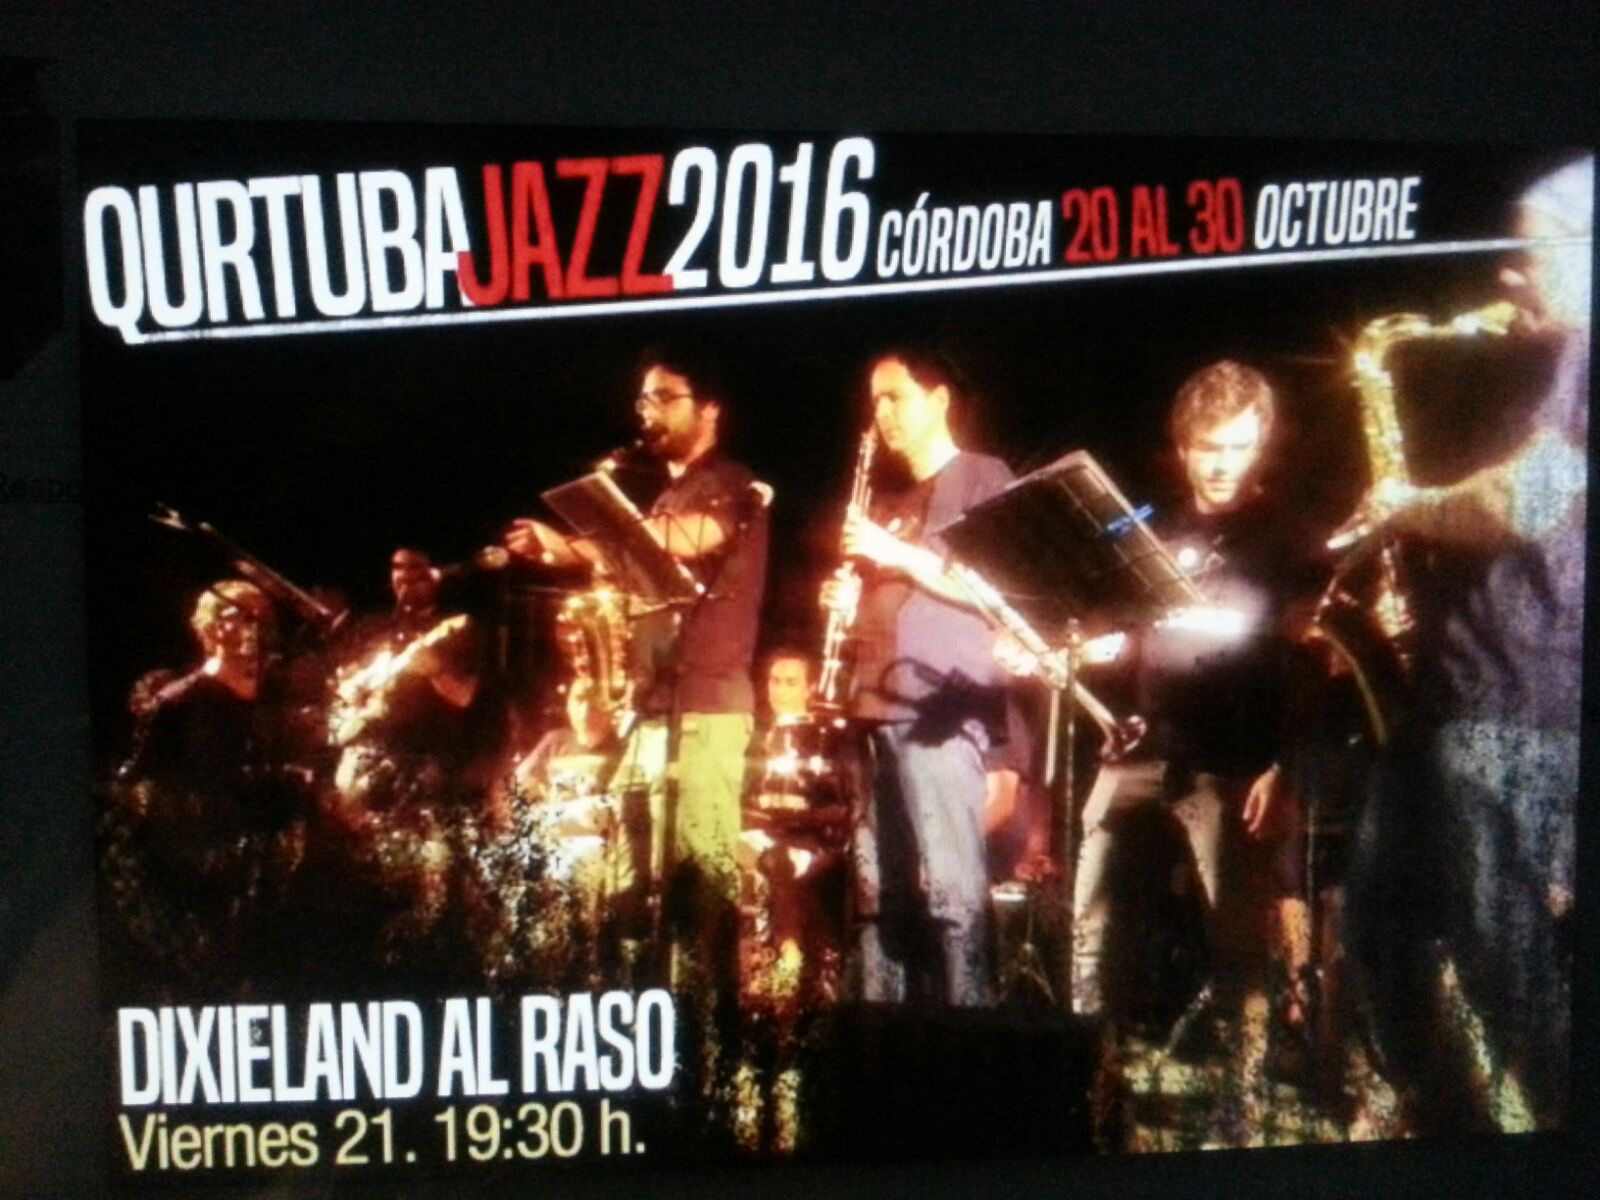 Cartel Qurtuba Jazz 2016. Dixieland Al Raso. Viernes 21 a las 19:30h